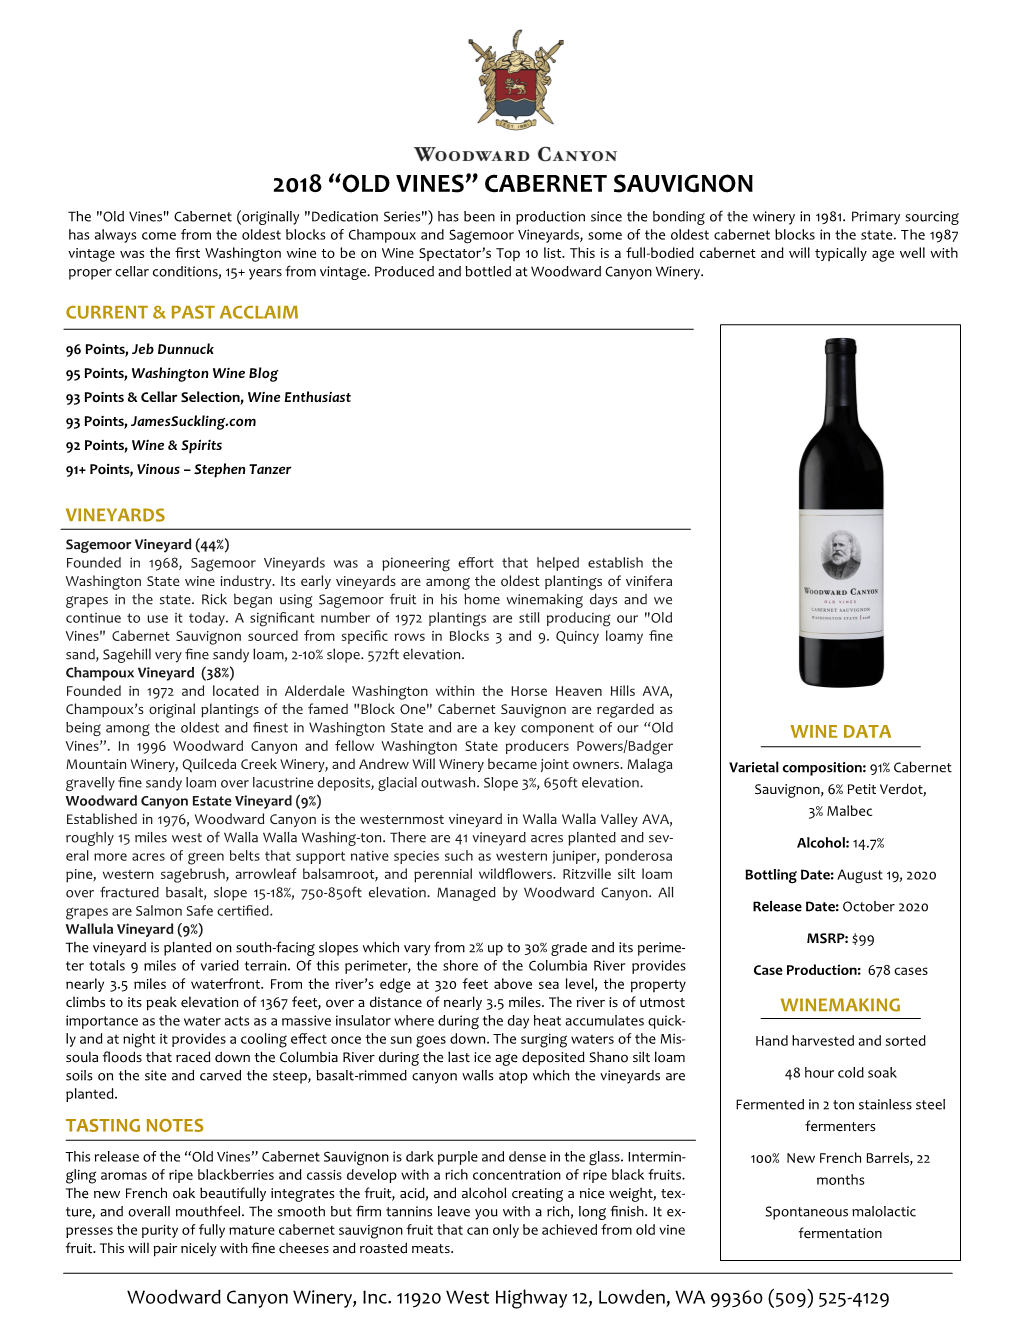 2018 "Old Vines" Cabernet Sauvignon Tech Sheet